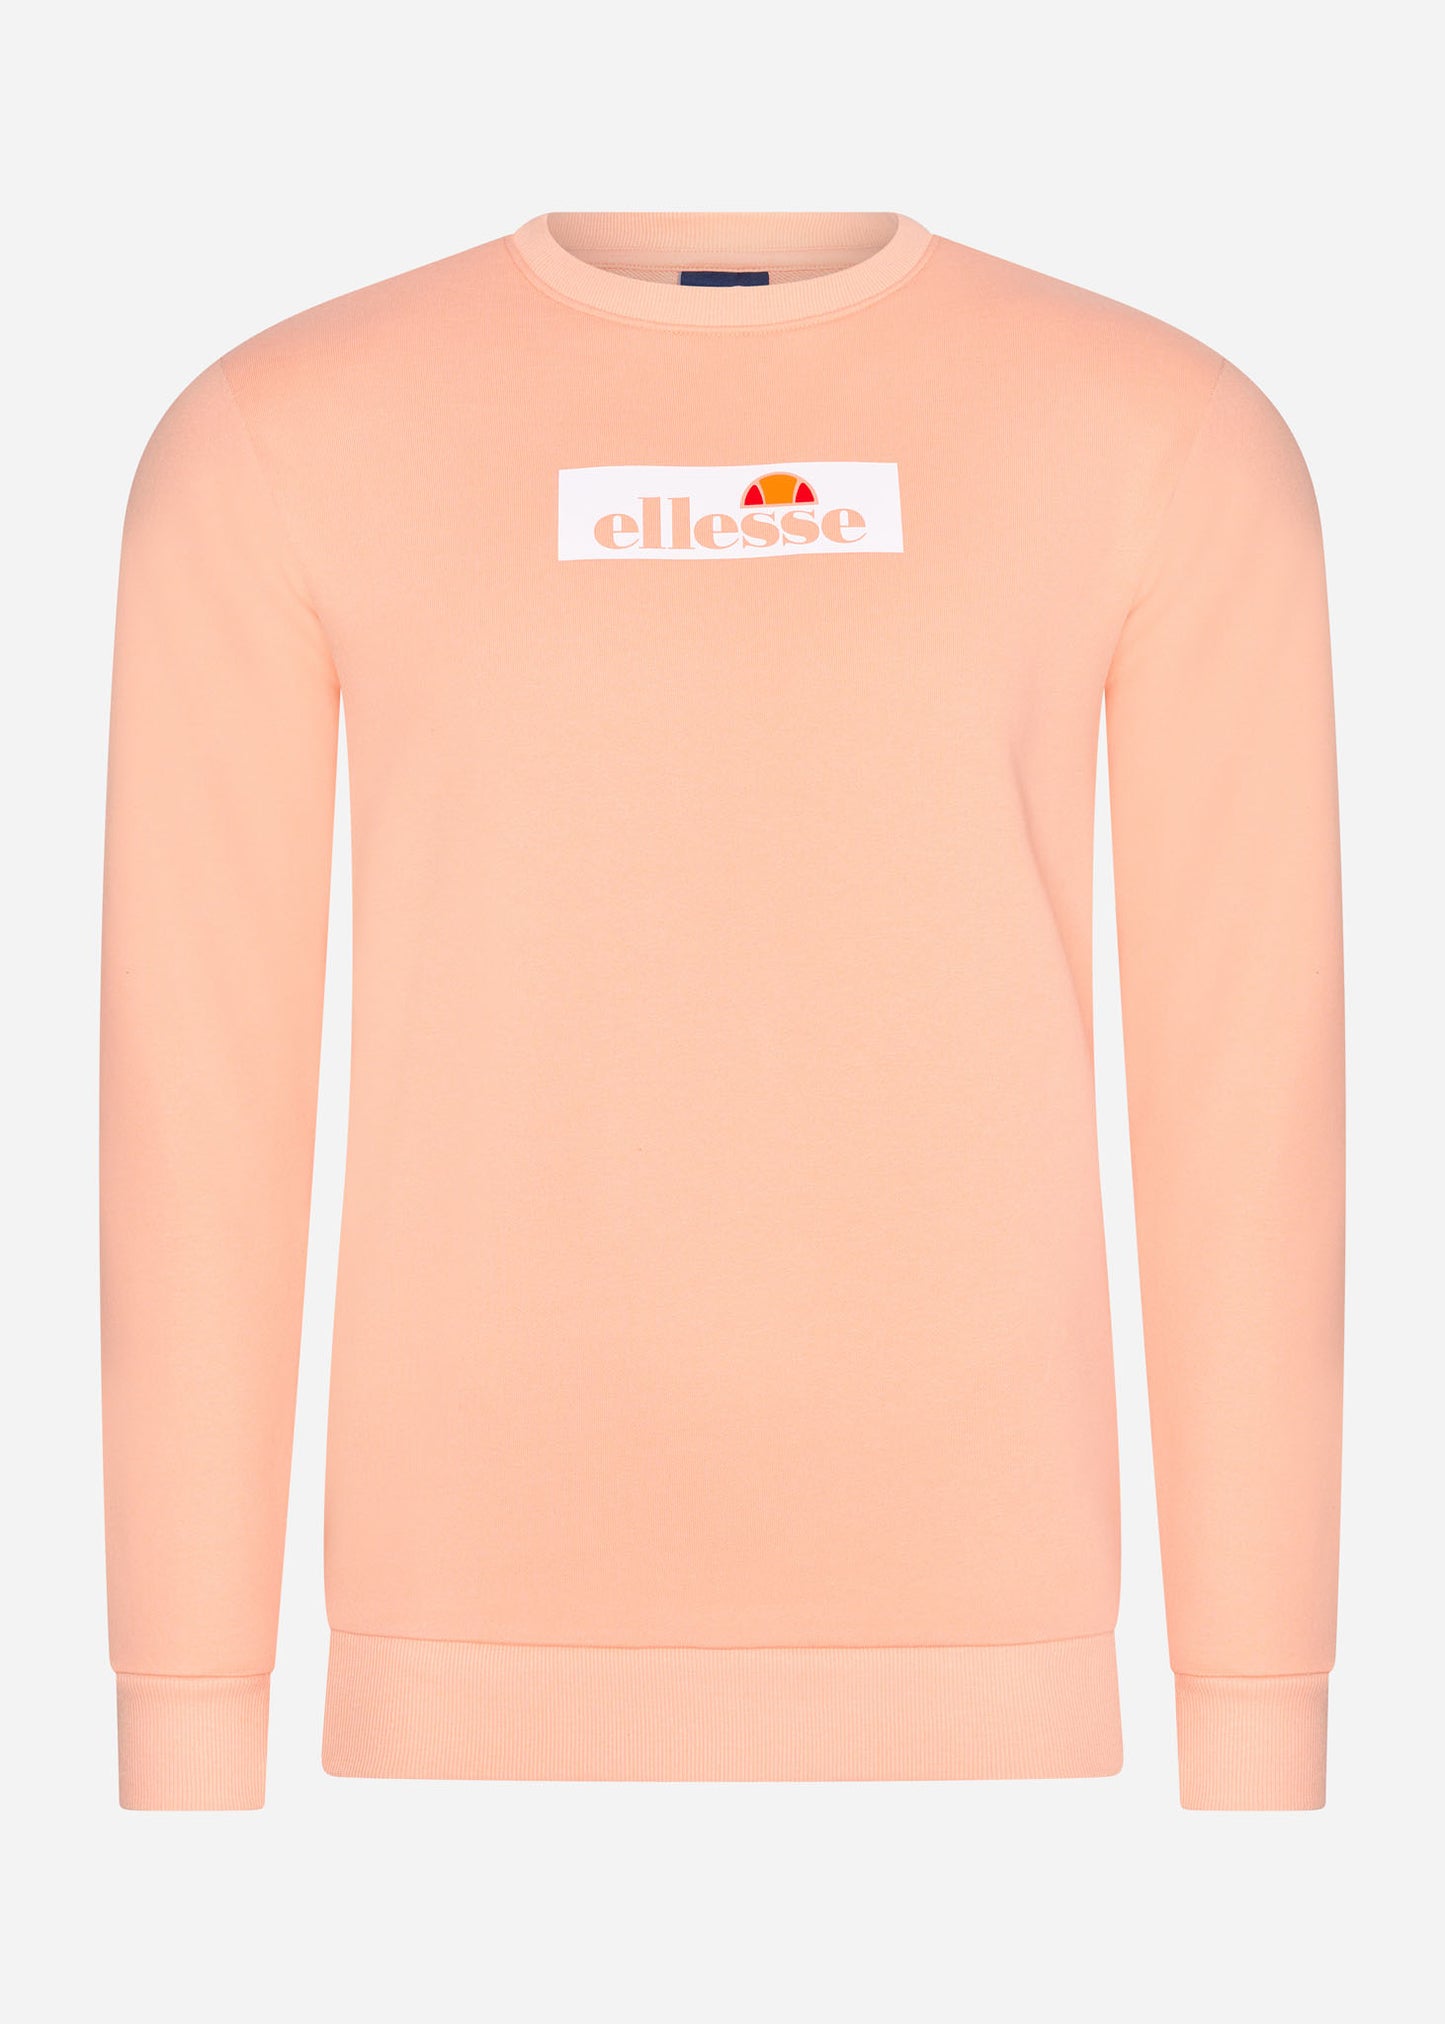 ellesse sweatshirt light orange